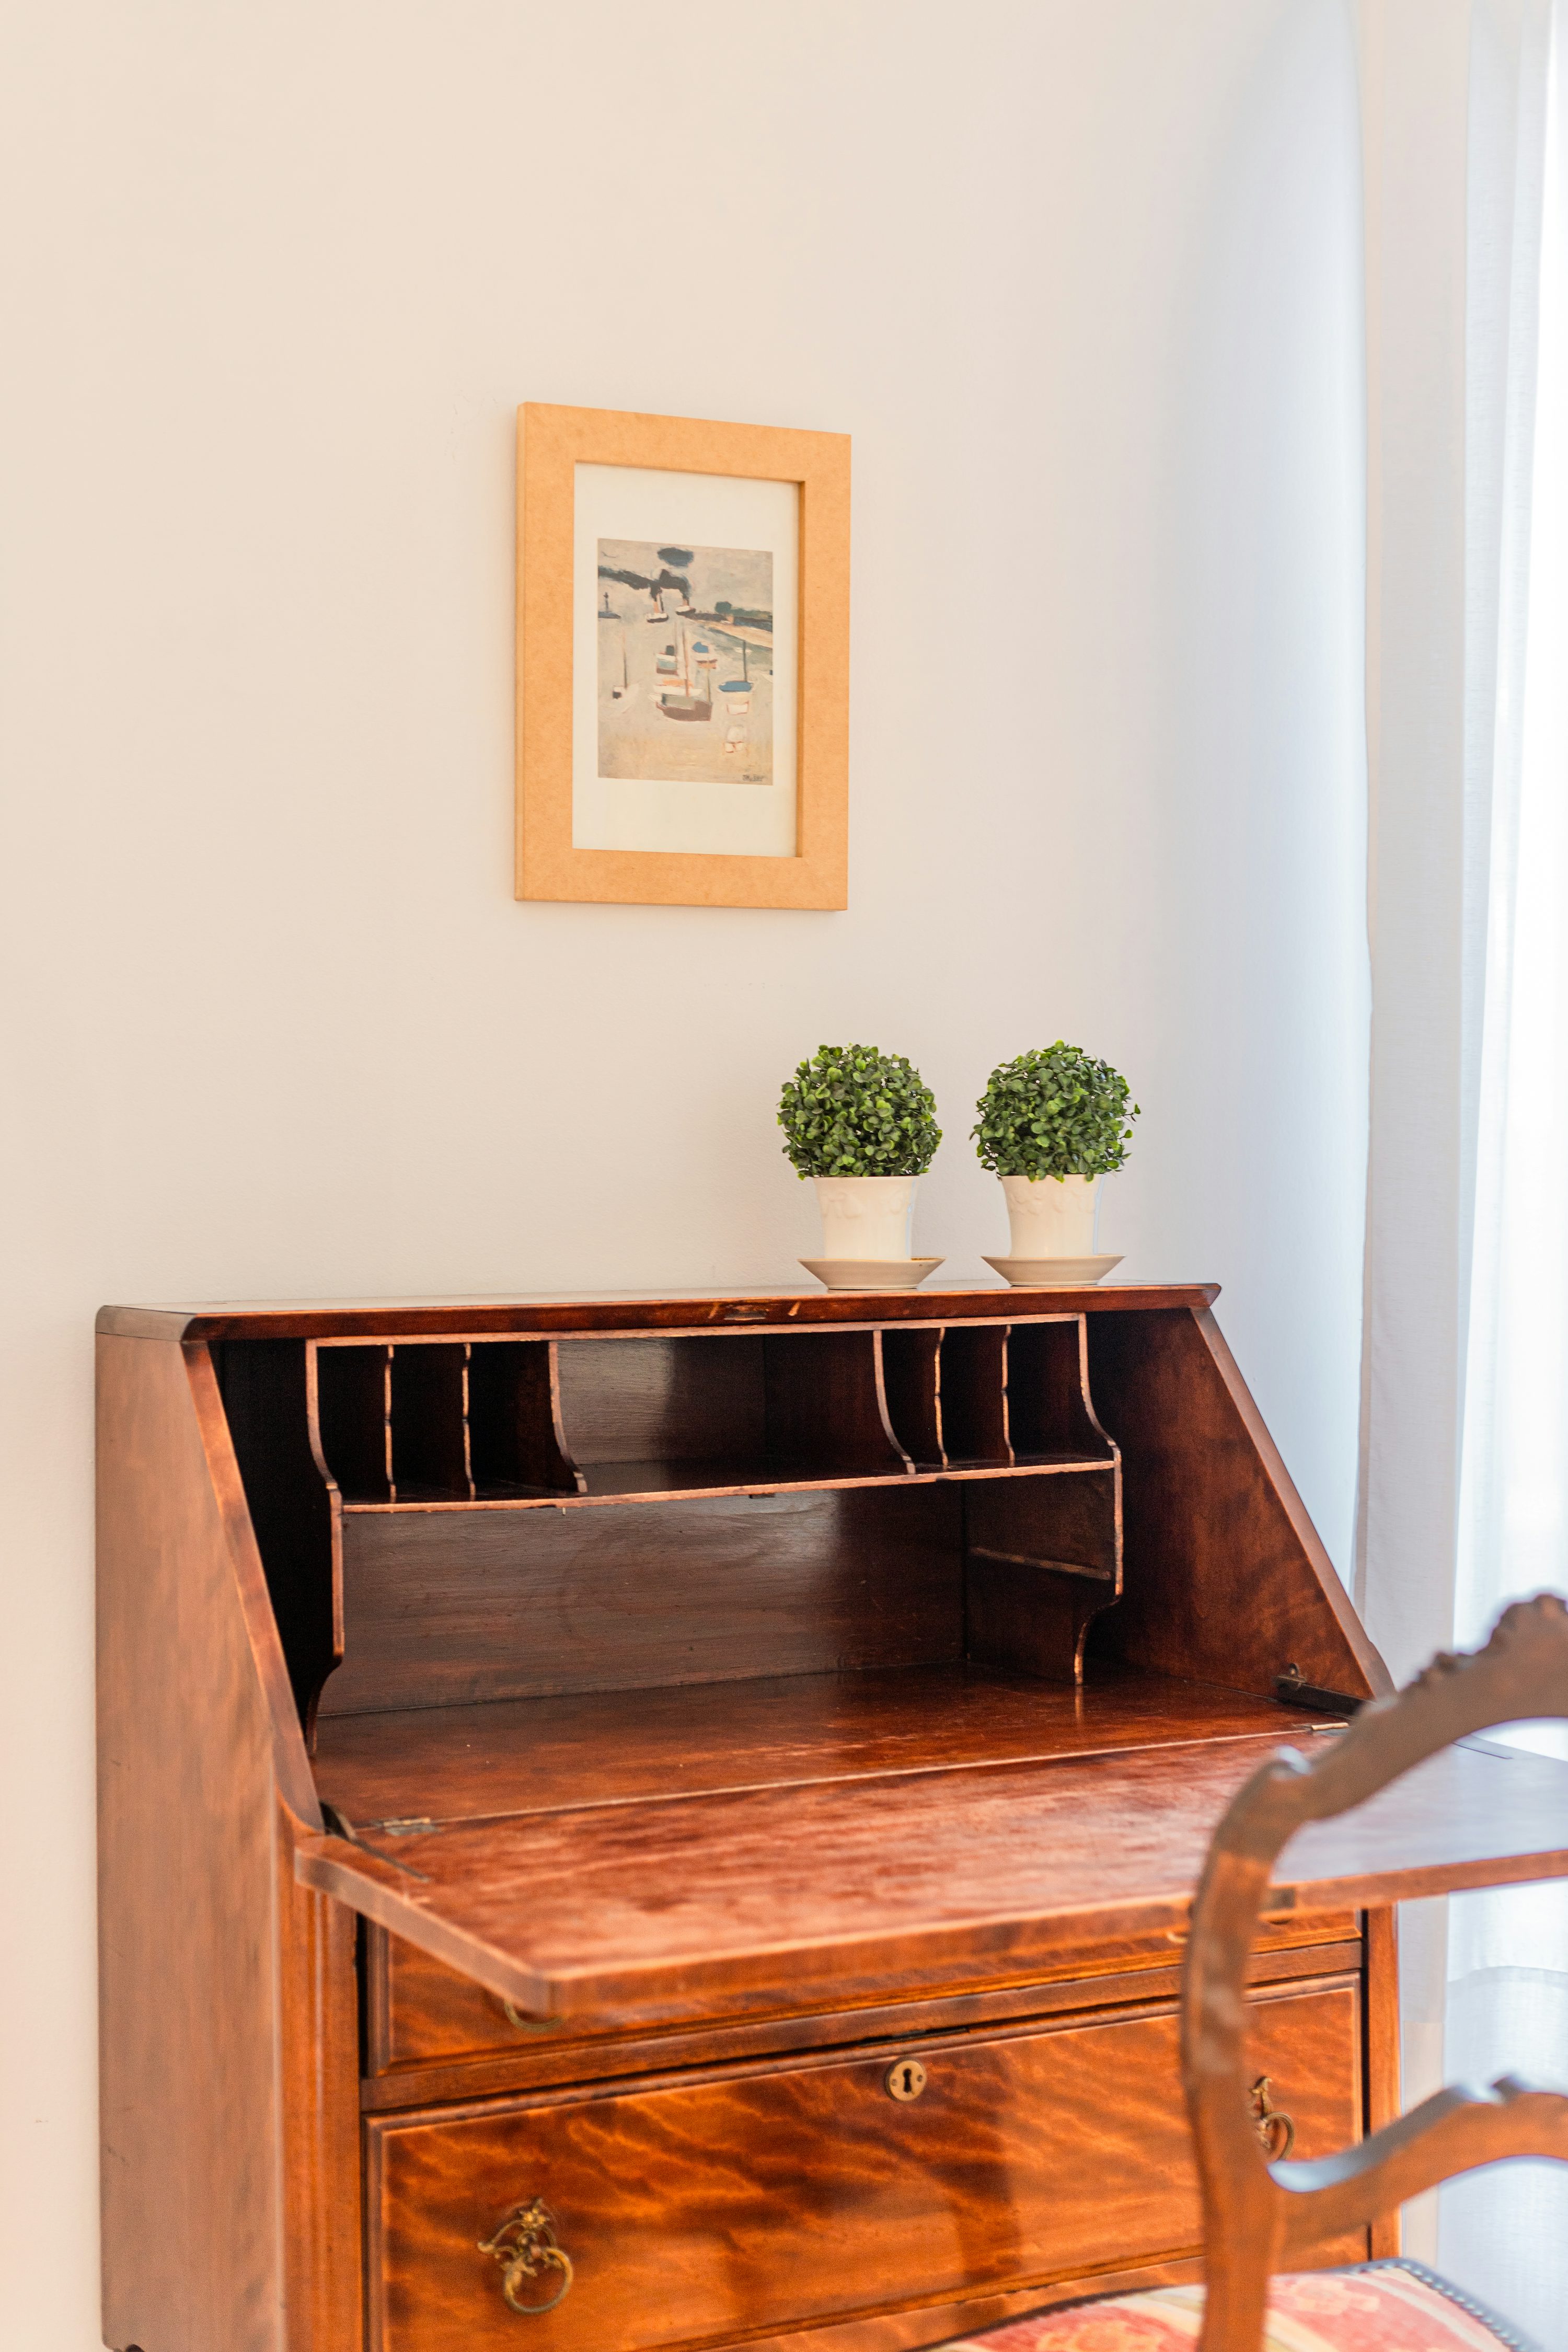 un escritorio de madera con dos plantas en macetas encima.